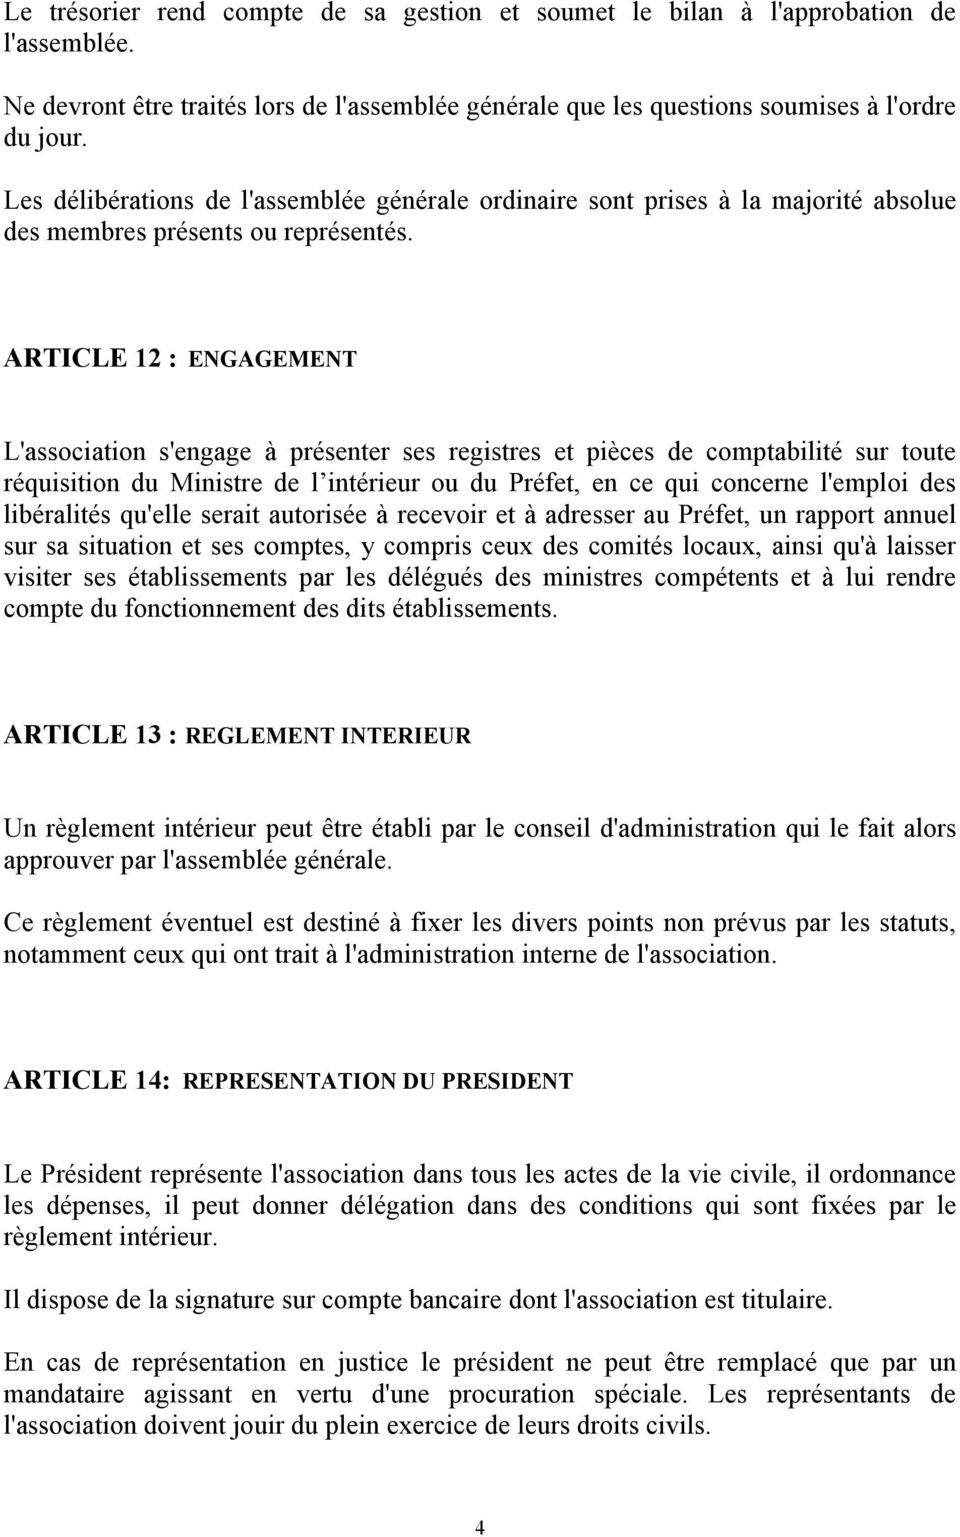 ARTICLE 12 : ENGAGEMENT L'association s'engage à présenter ses registres et pièces de comptabilité sur toute réquisition du Ministre de l intérieur ou du Préfet, en ce qui concerne l'emploi des